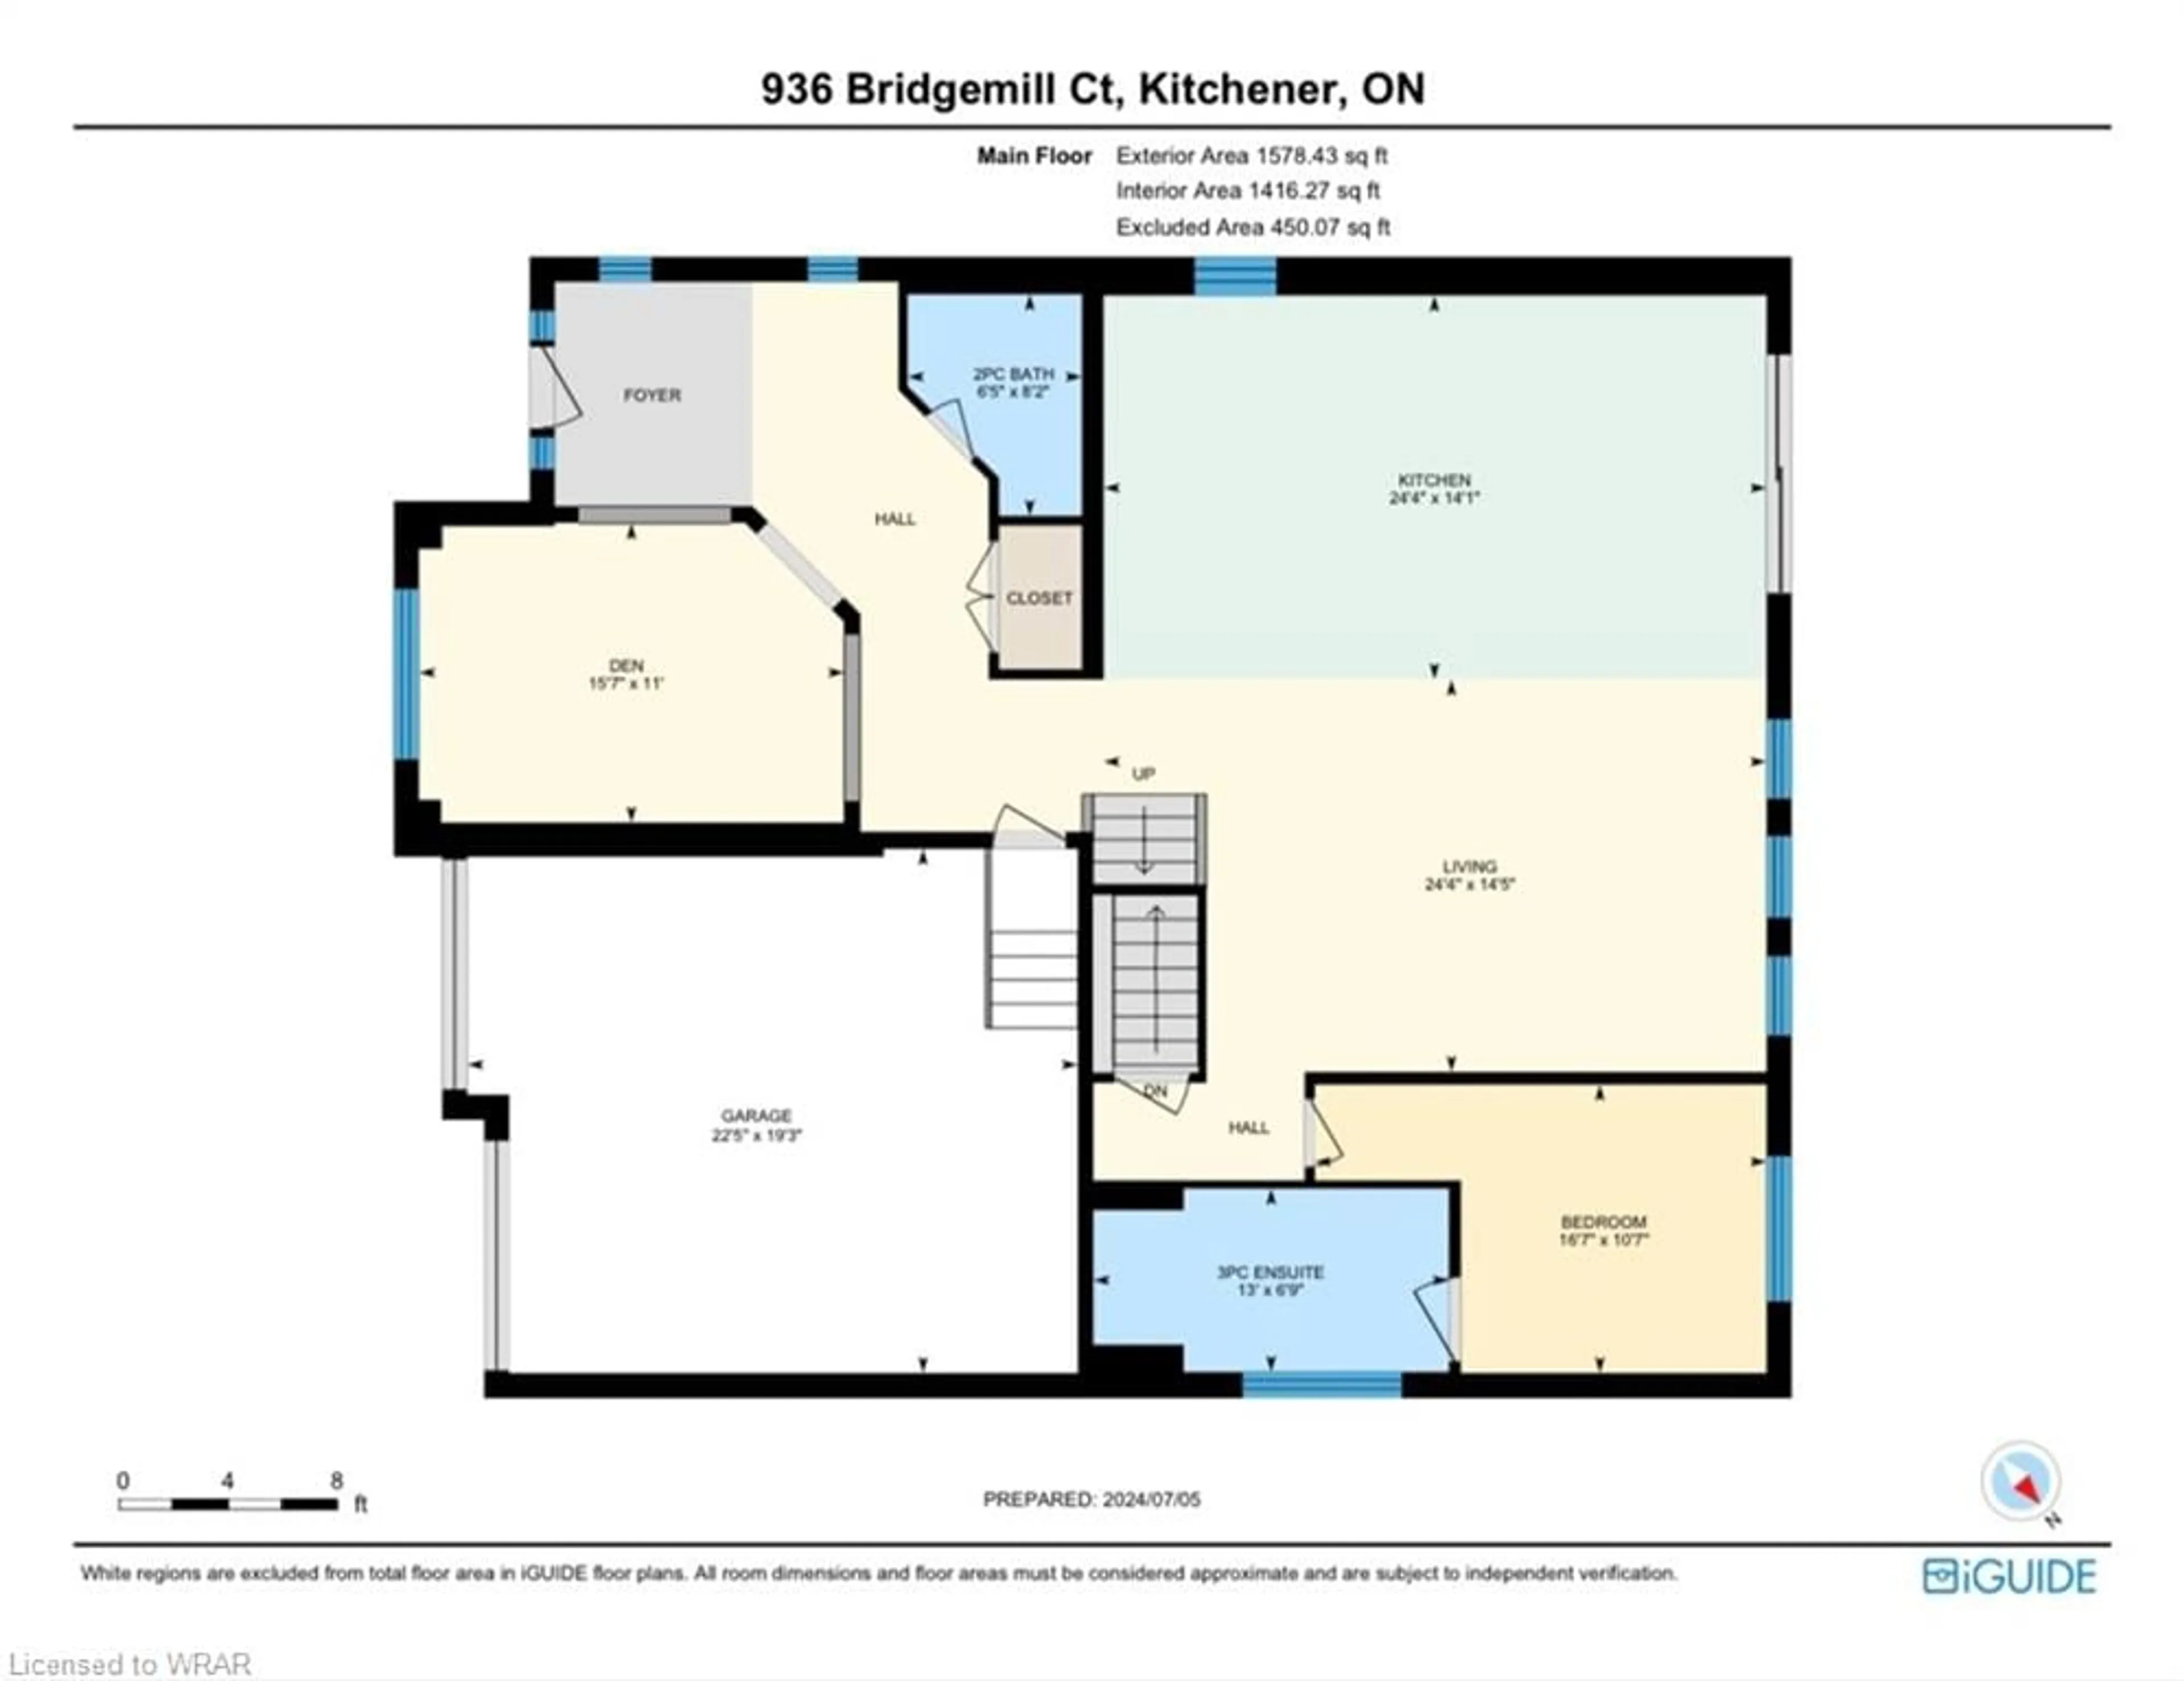 Floor plan for 936 Bridgemill Crt, Kitchener Ontario N2A 0K3